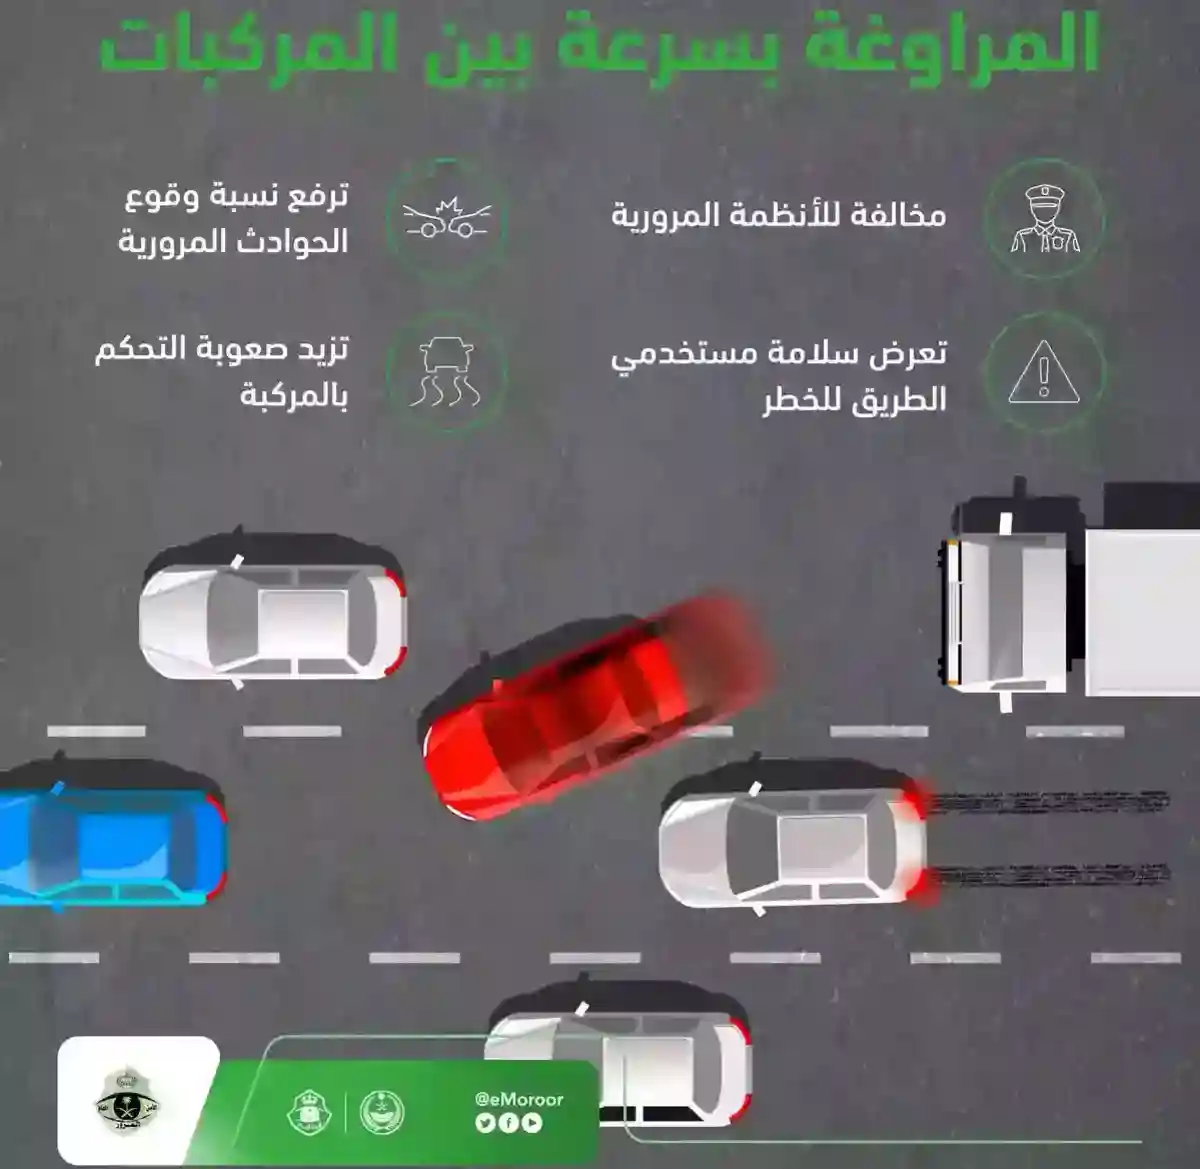 المرور السعودي: غرامة المراوغة بين السيارات تصل الى 6 الف ريال